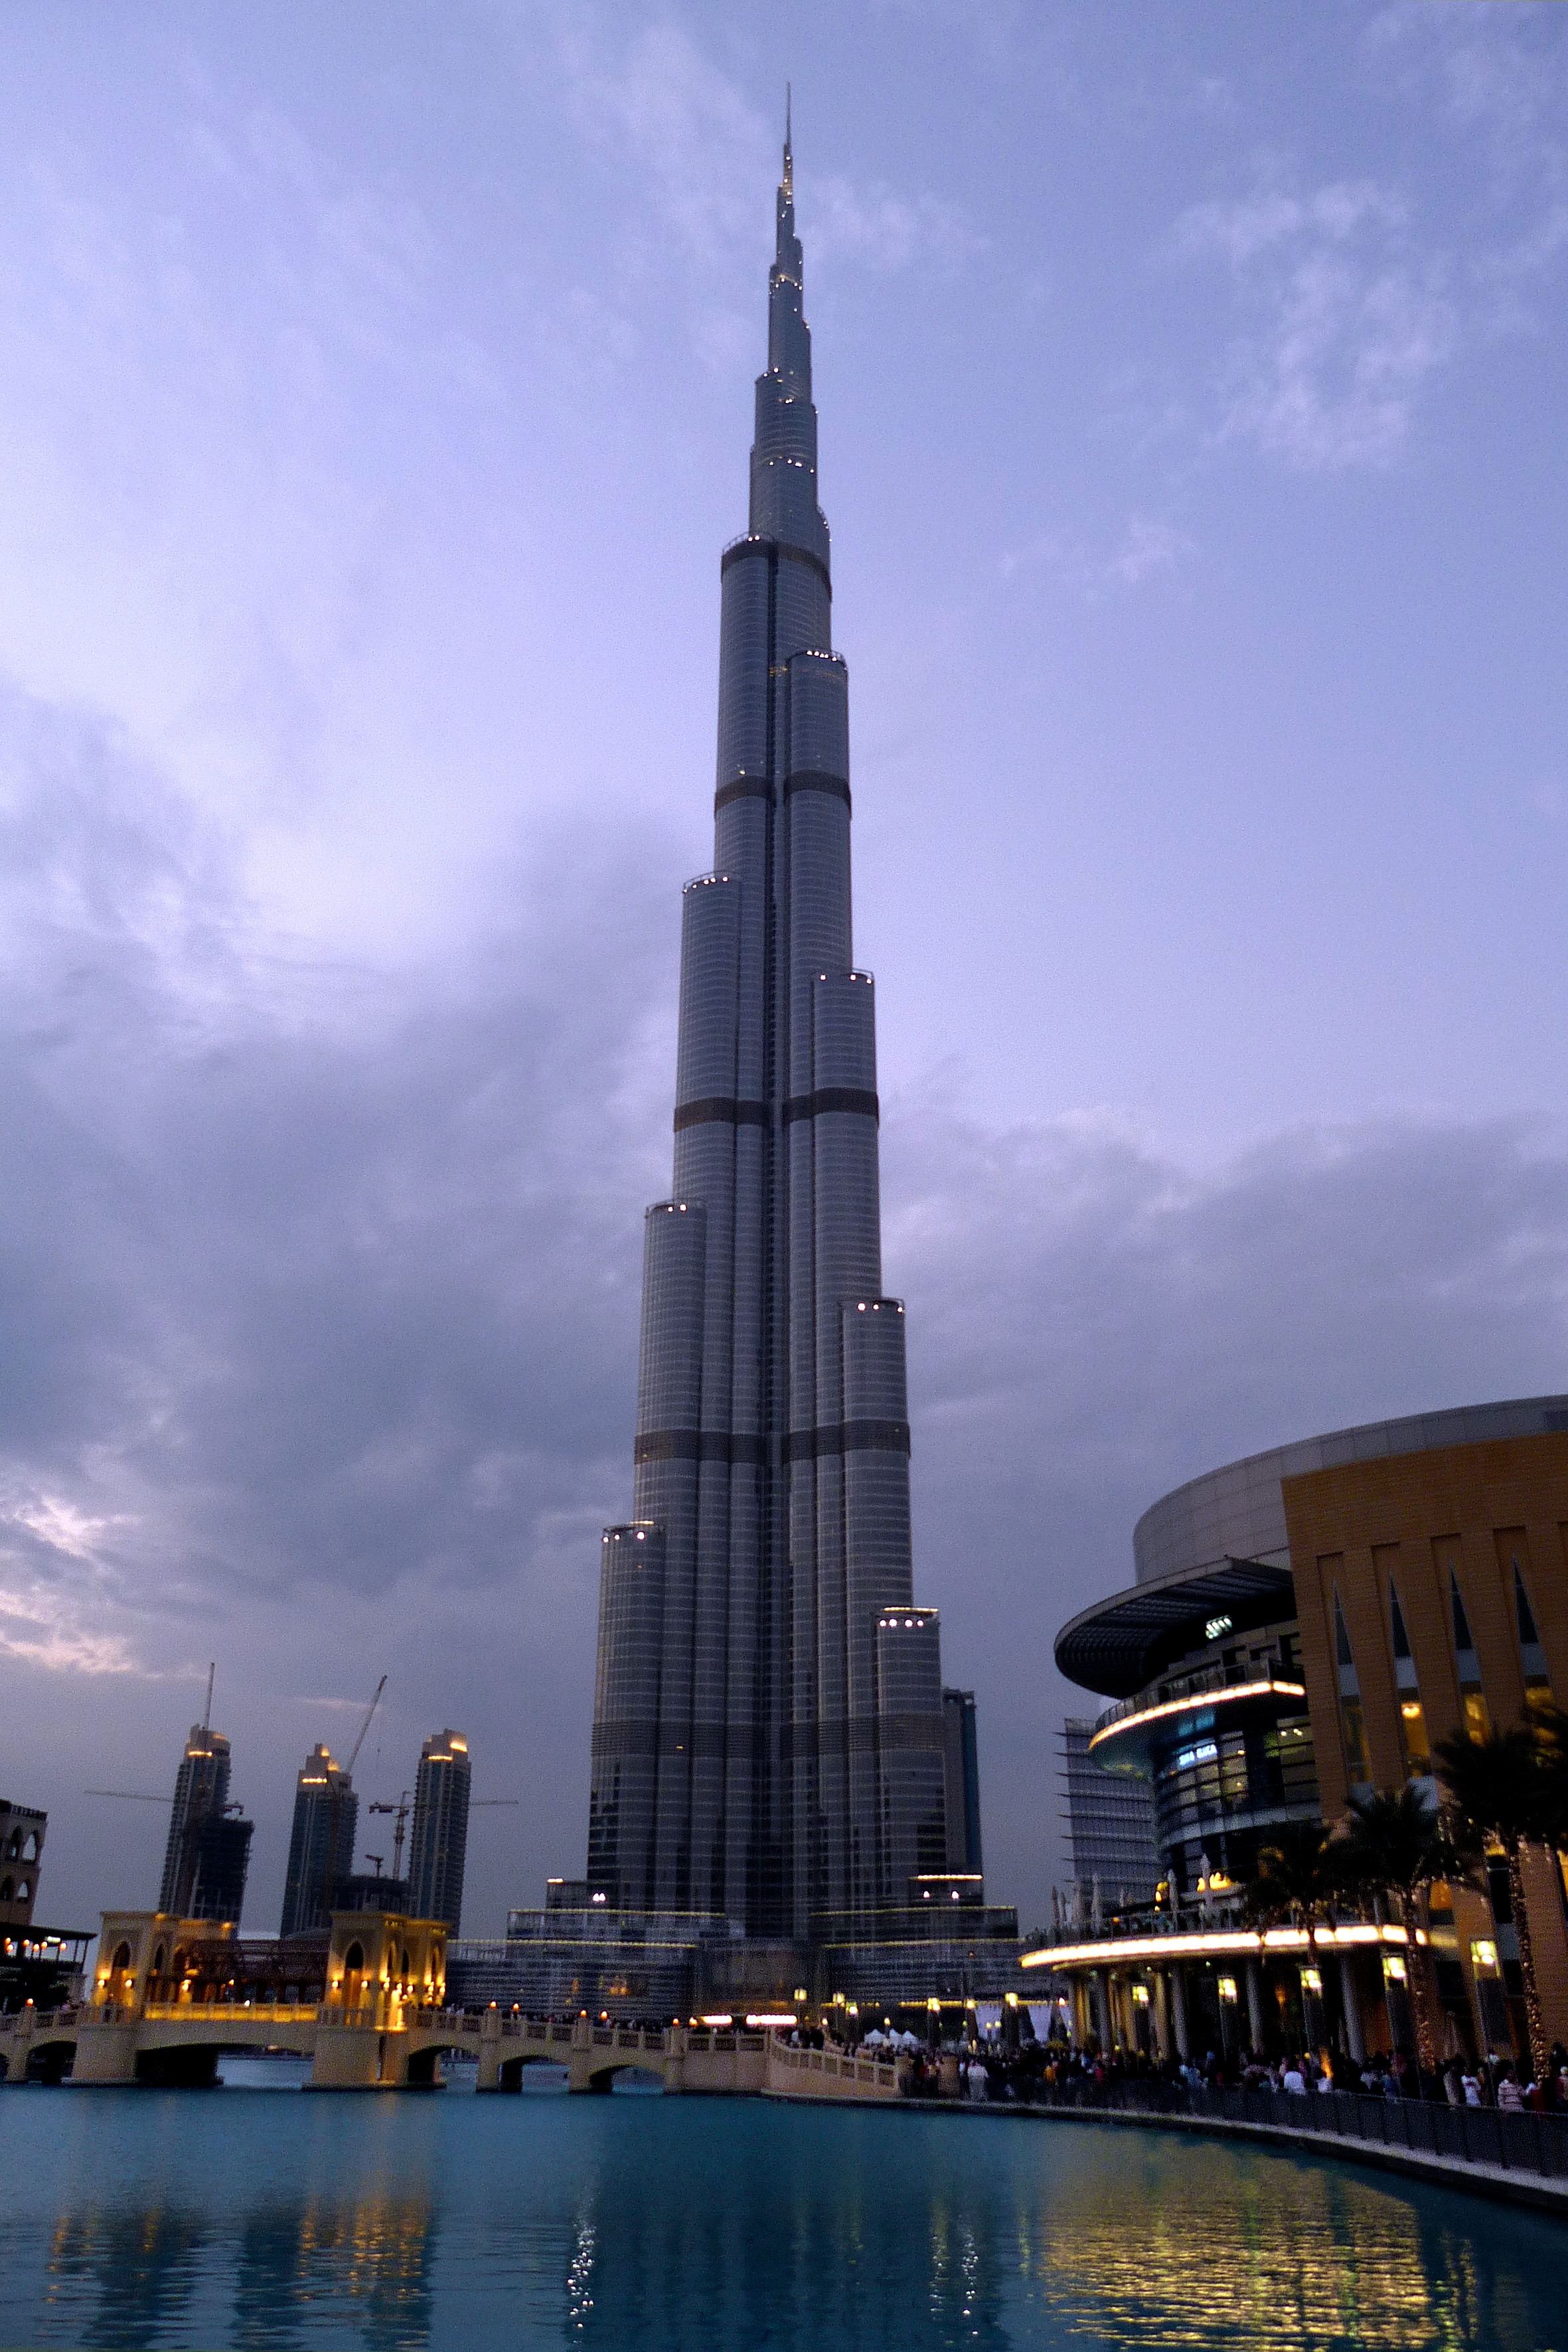 Бесплатное фото Обои с высоким шпилем в Дубае